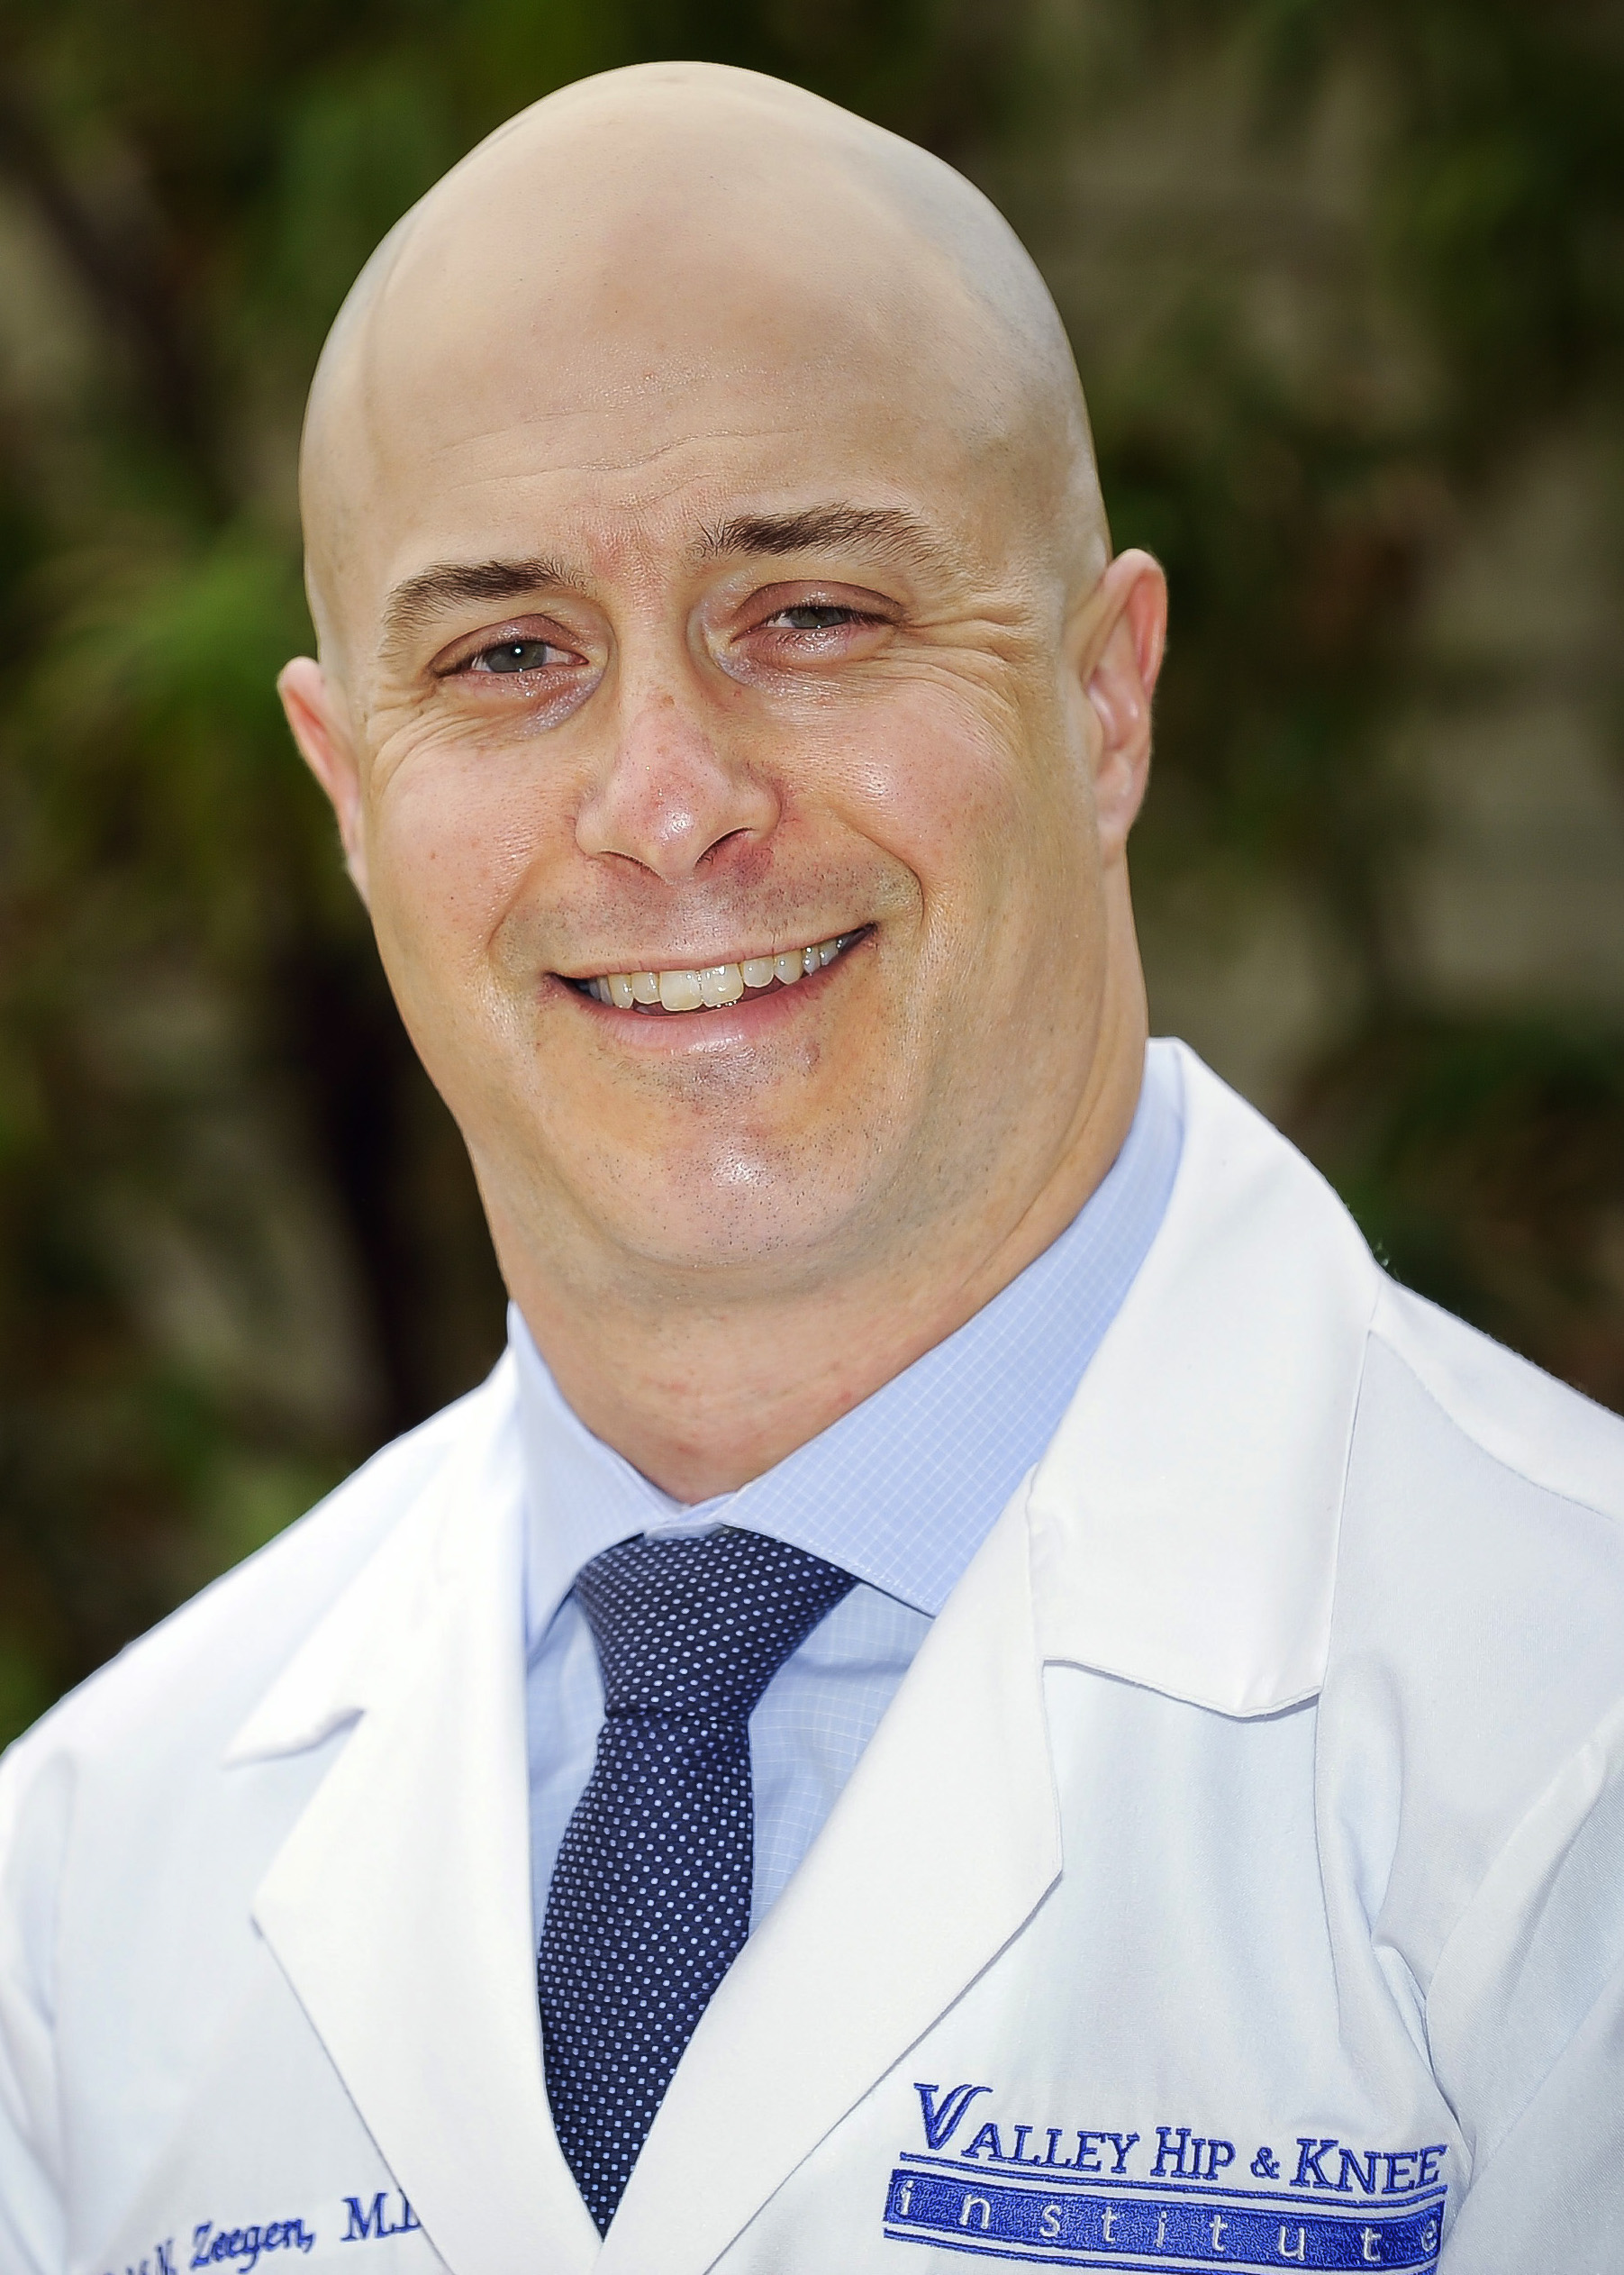 Associate Medical Director of the Valley Hip & Knee Institute Erik N. Zeegen, MD